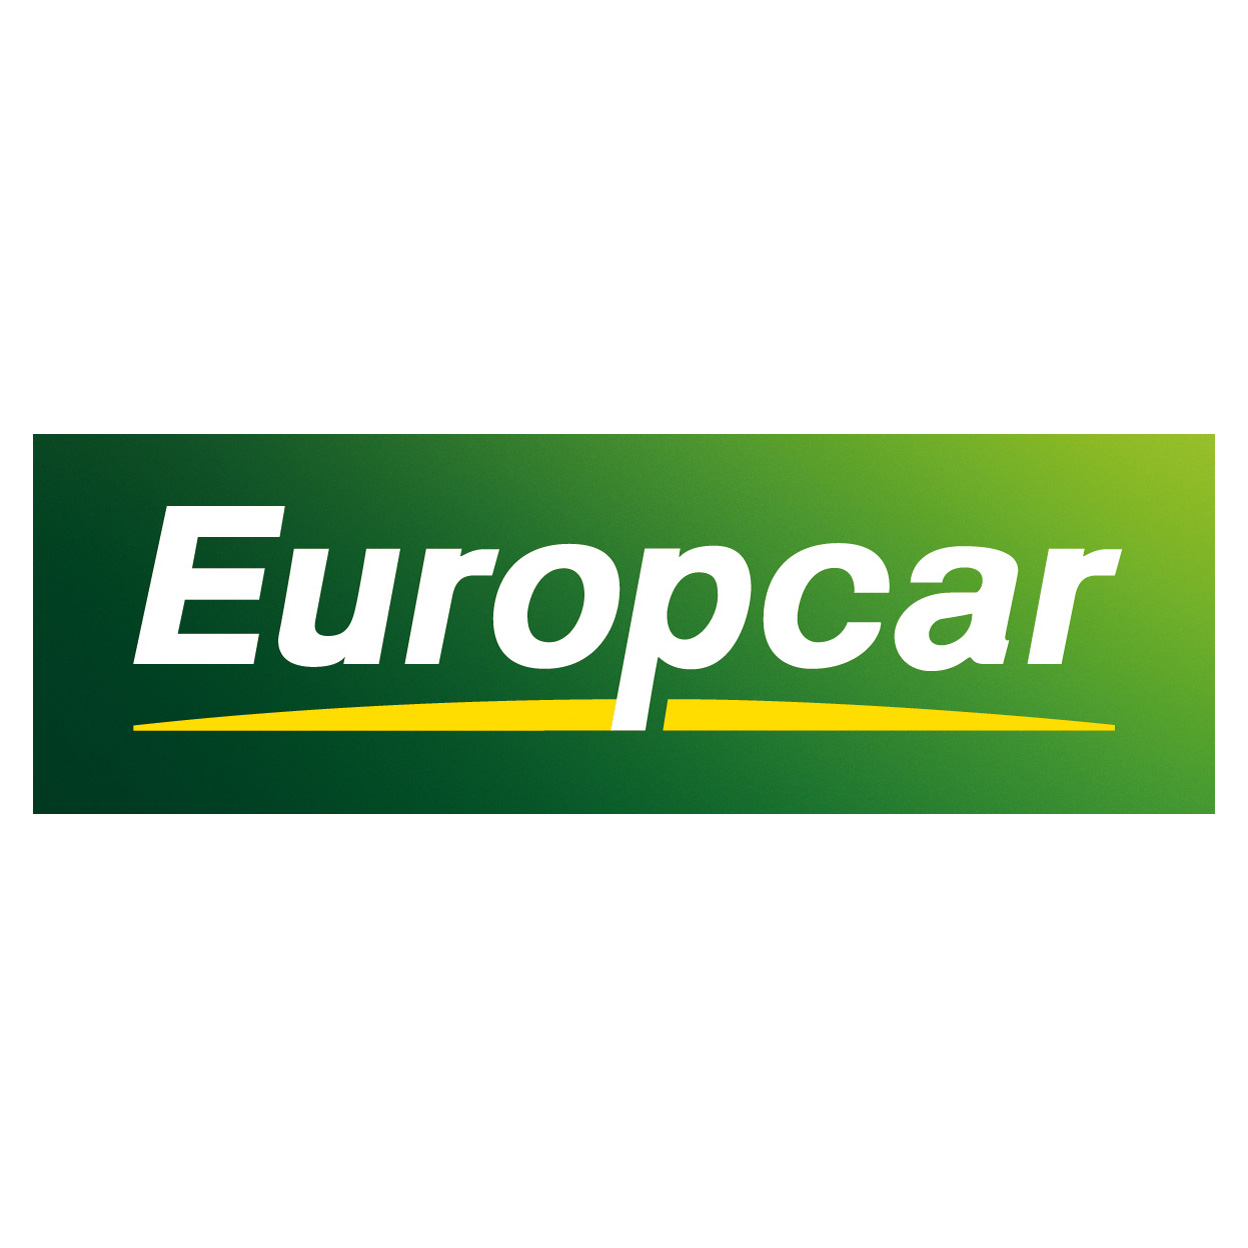 Europcar Logo